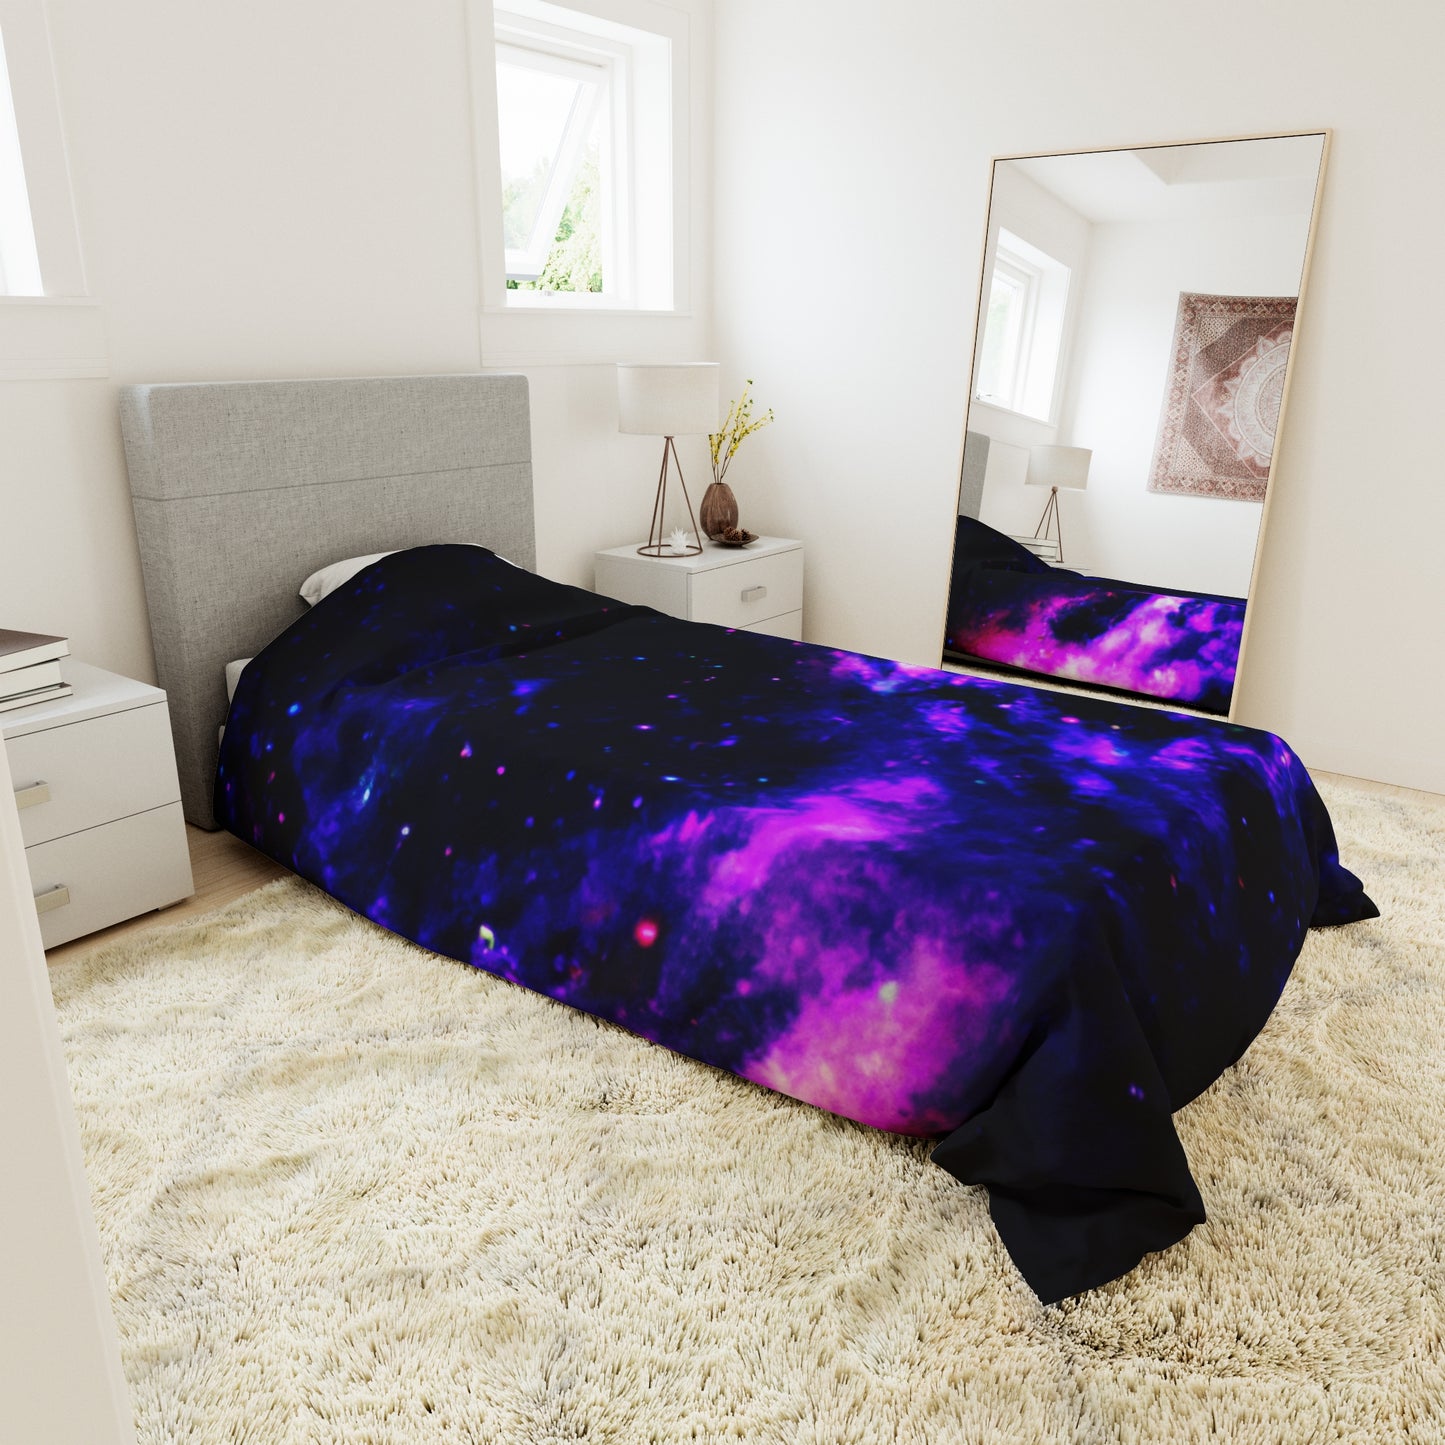 Dreamweaver Magnolia - Astronomy Duvet Bed Cover